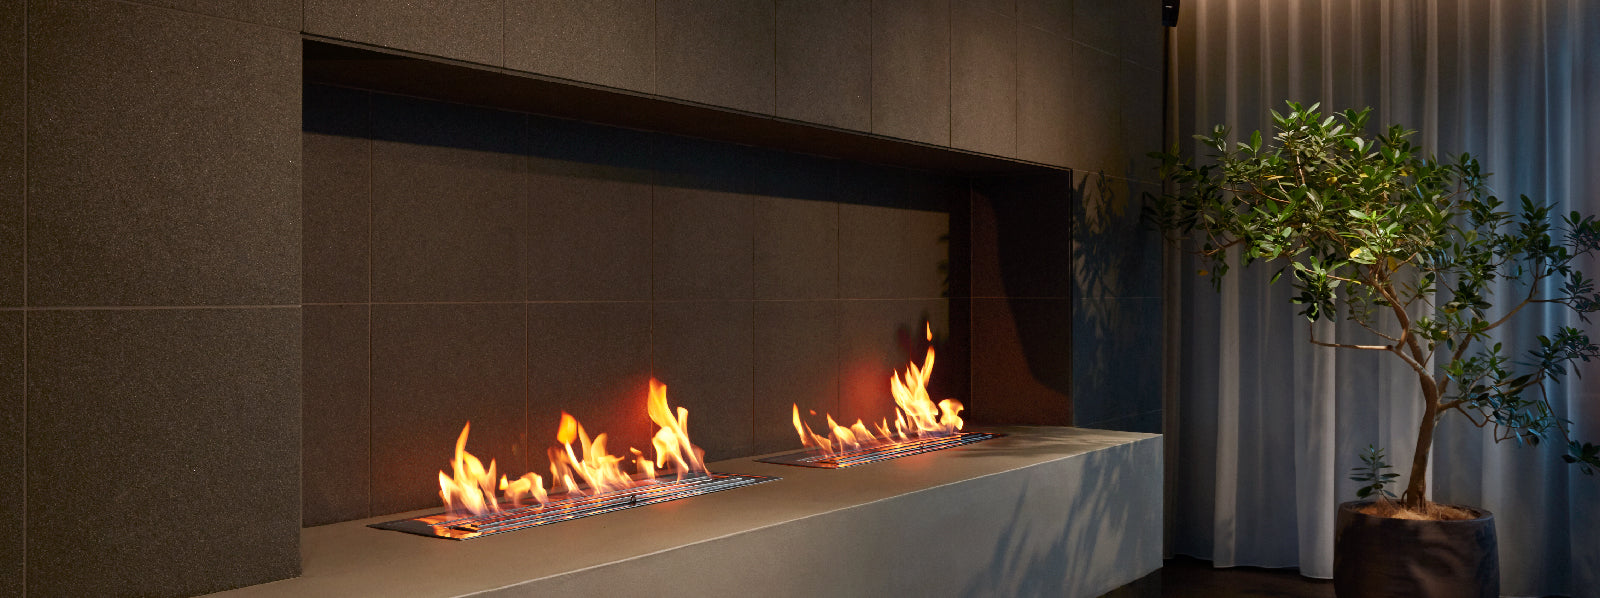 バイオエタノール暖炉「EcoSmart Fire」製品のs-xl1200の画像。暖炉と違って煙突や換気システムが不要なため、自由な場所に配置できています。